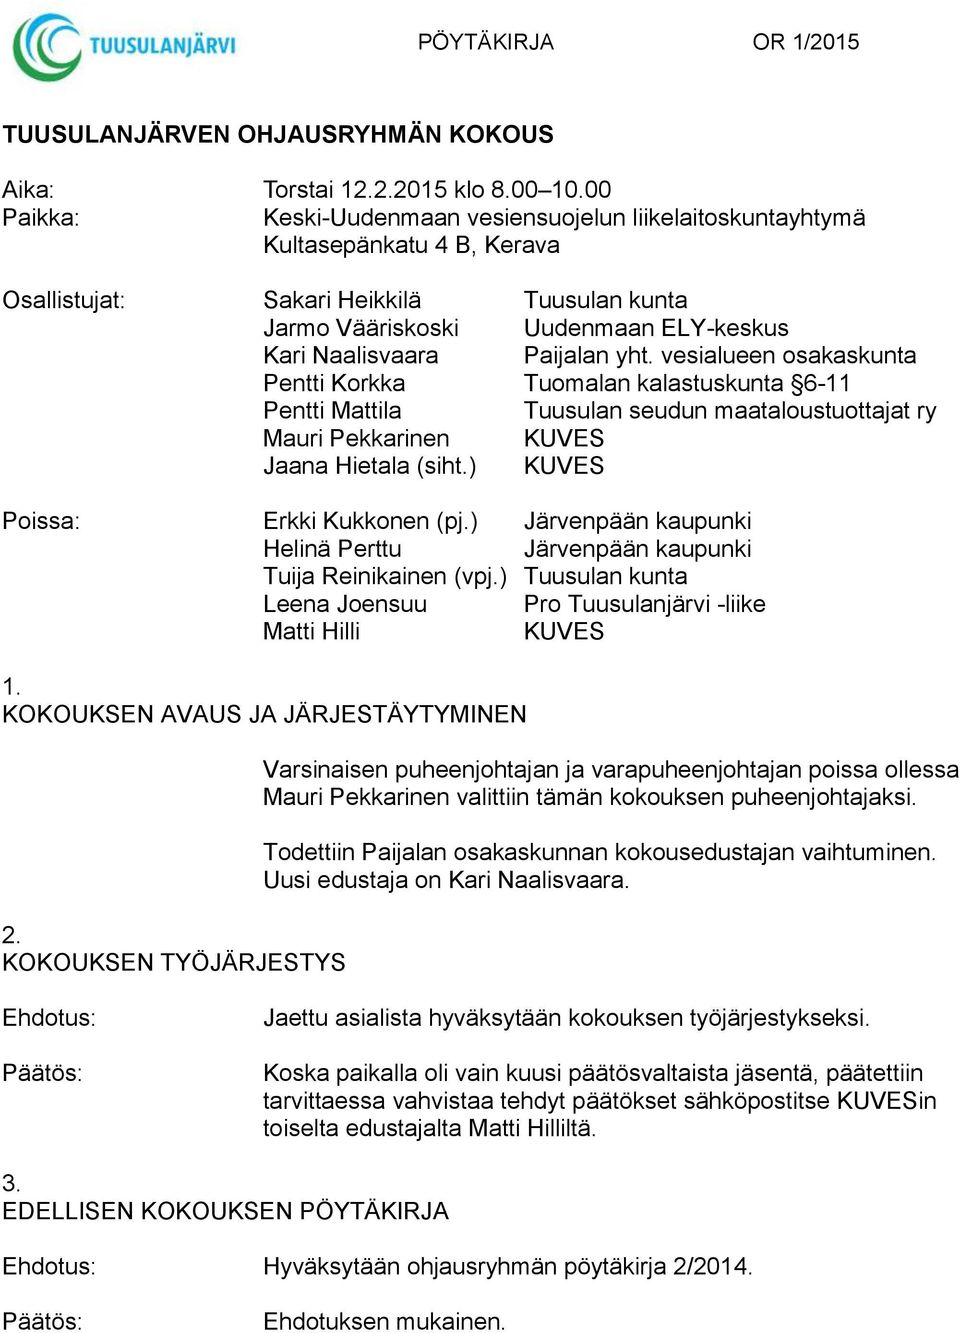 Paijalan yht. vesialueen osakaskunta Pentti Korkka Tuomalan kalastuskunta 6-11 Pentti Mattila Tuusulan seudun maataloustuottajat ry Mauri Pekkarinen KUVES Jaana Hietala (siht.